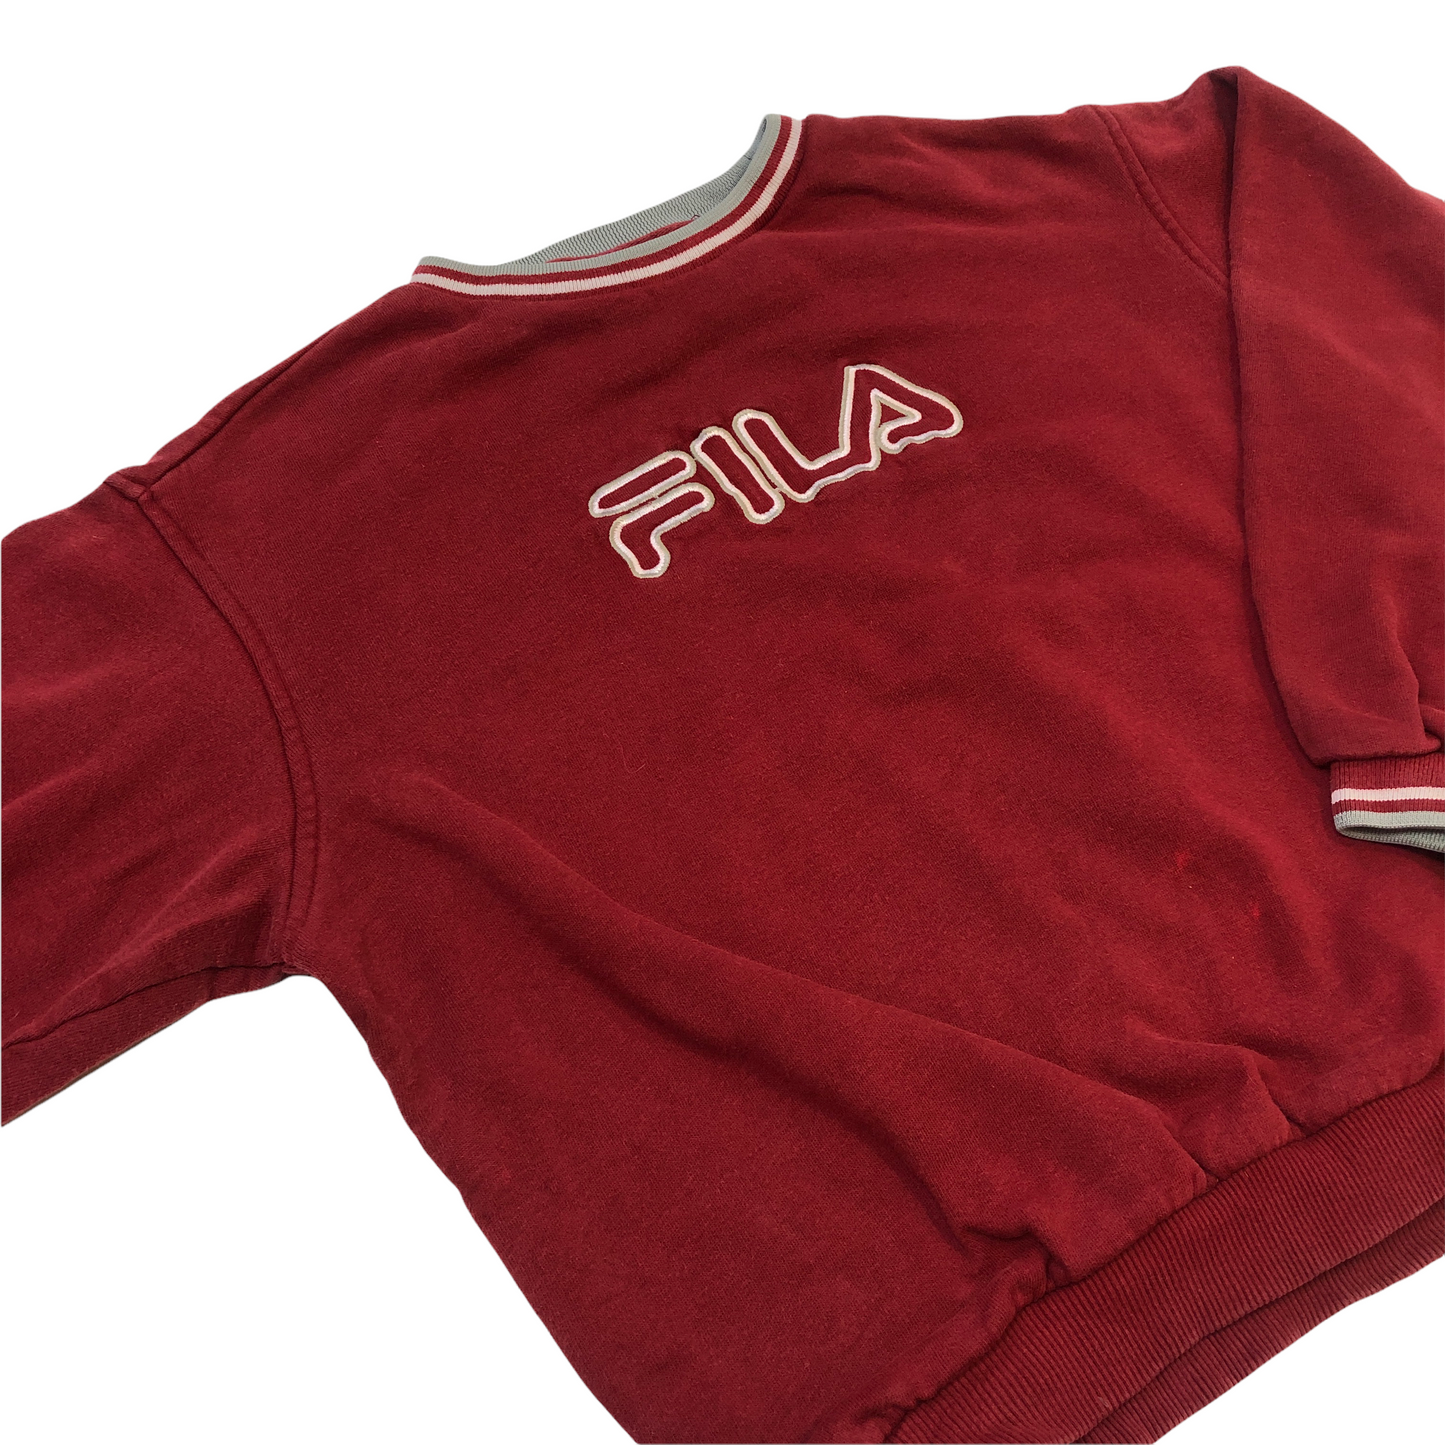 Vintage 90's Fila Sweatshirt (Age 10-12)